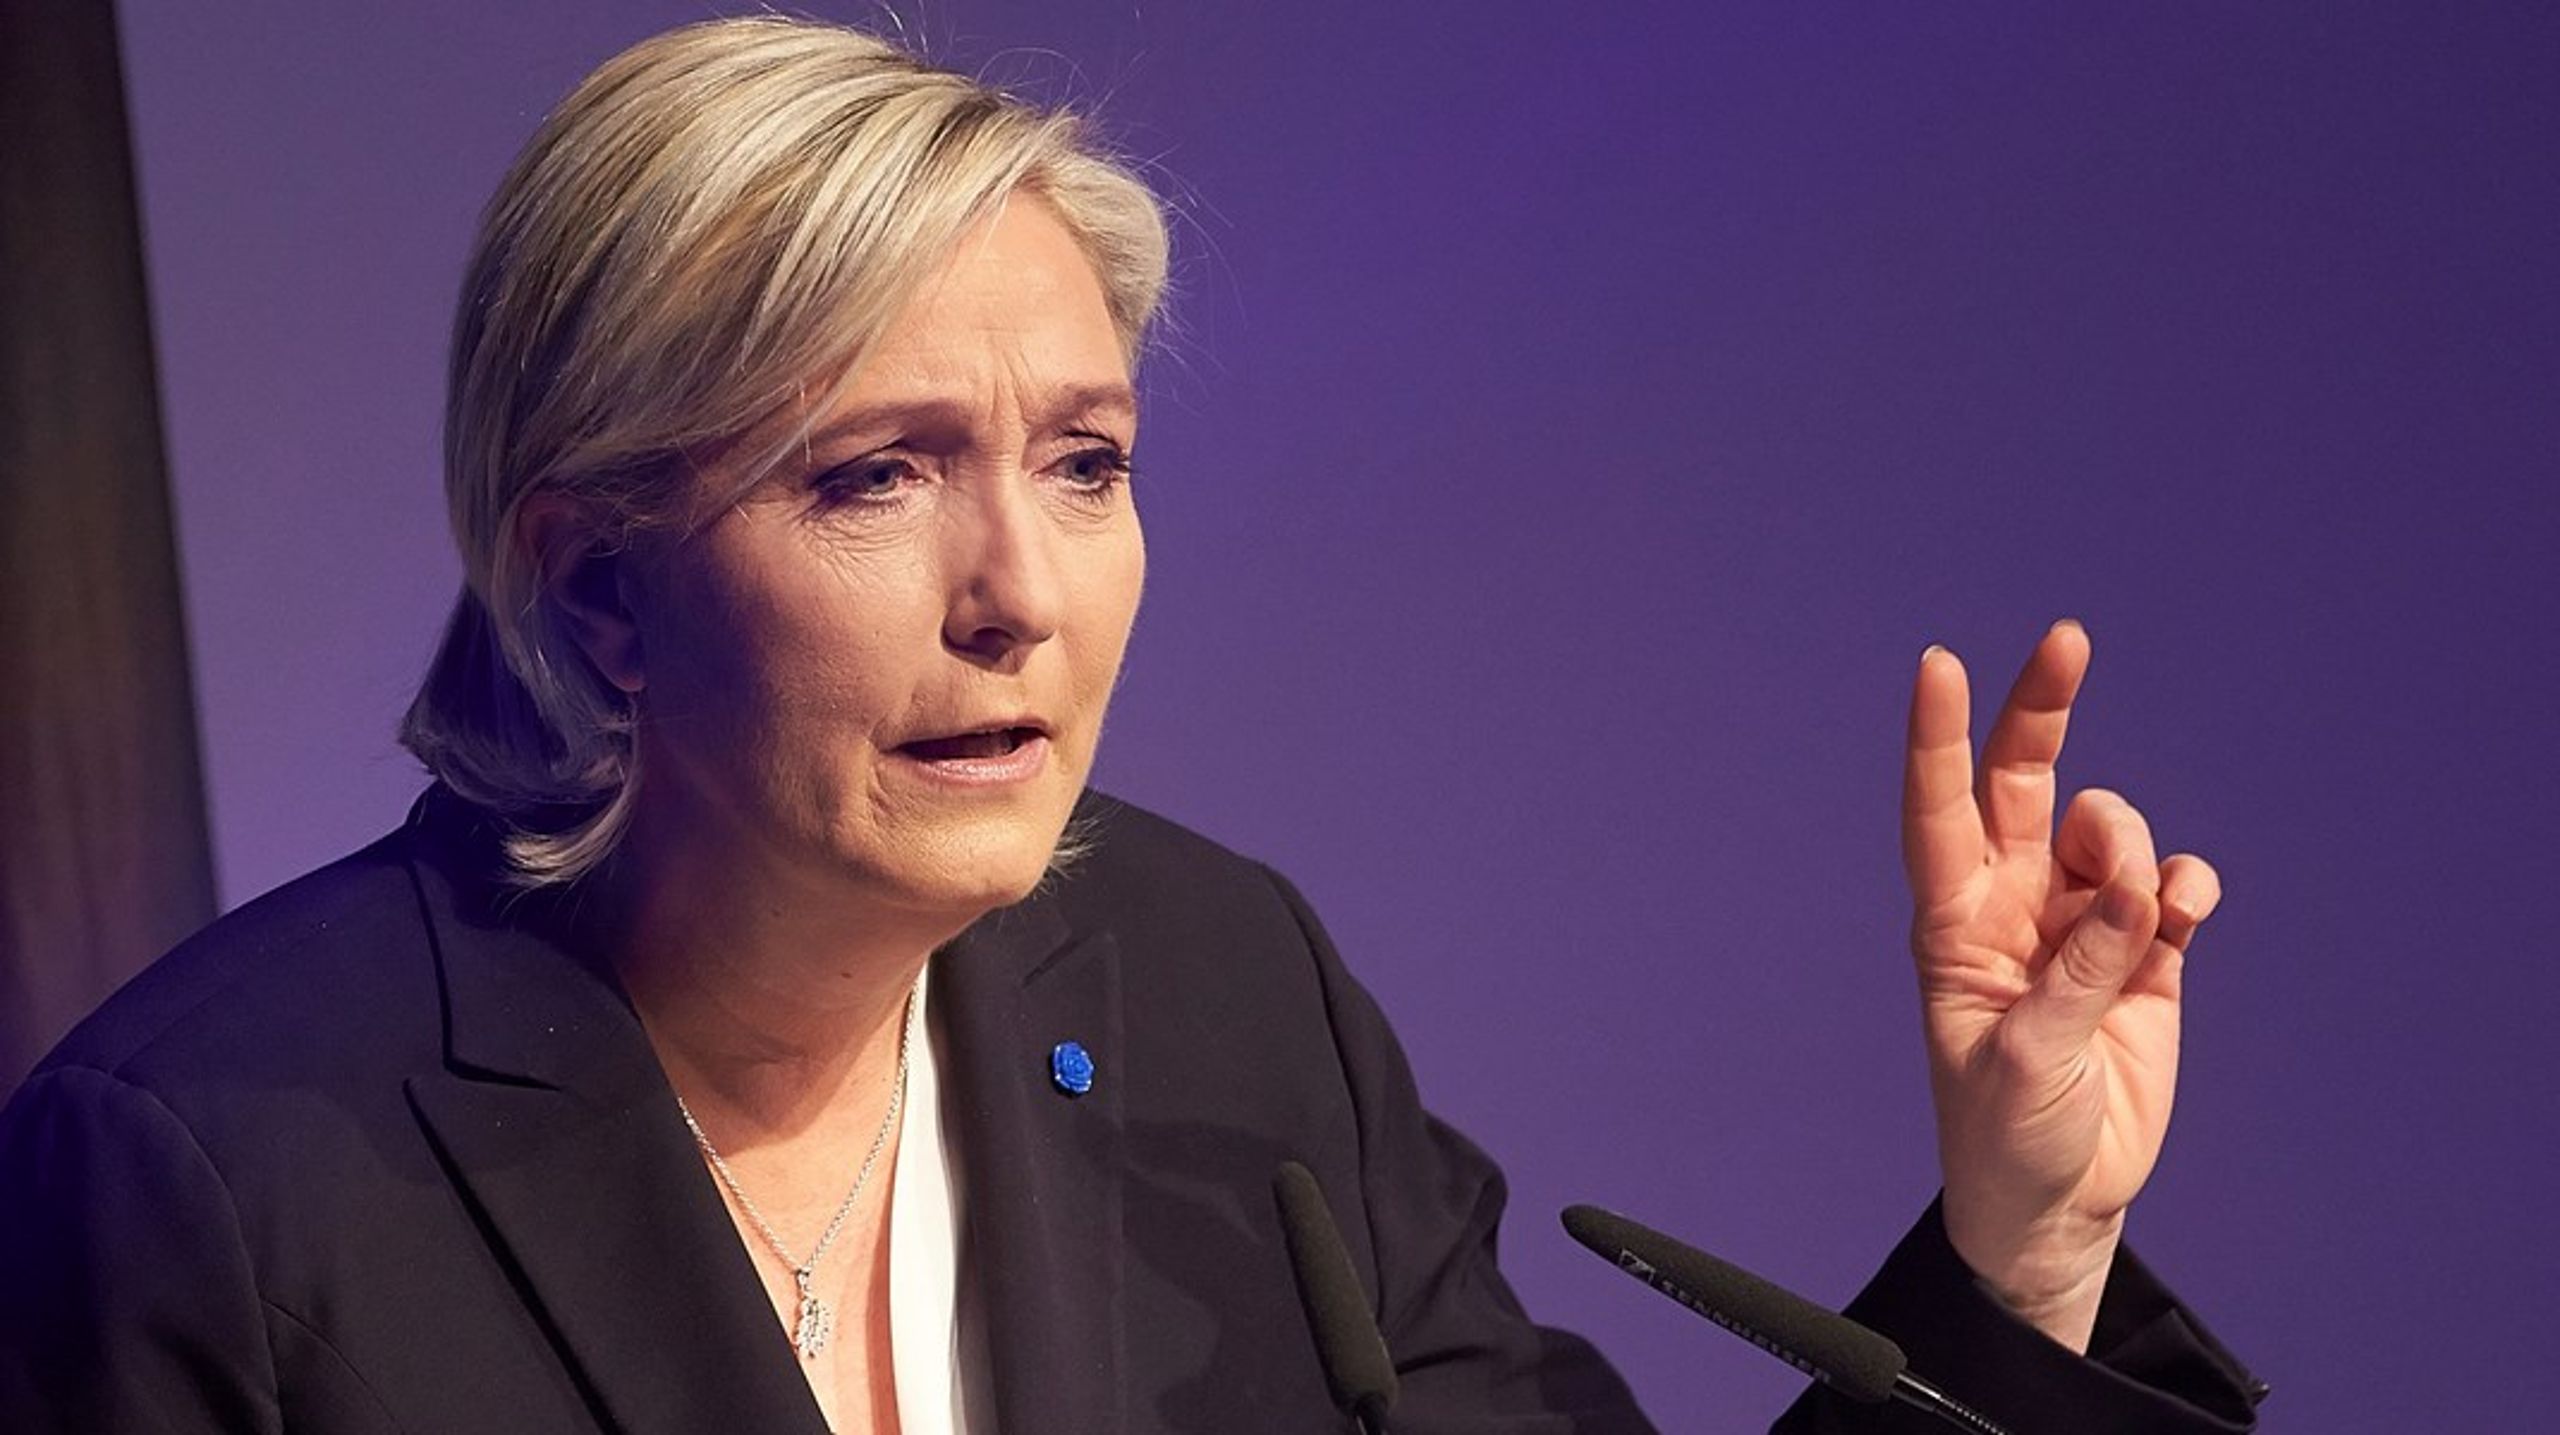 Det varsler dårligt for Europas støtte til Ukraine, at&nbsp;Marine Le Pens parti står til at blive det største i Frankring ved EP-valget, skriver Jakob Wind.&nbsp;